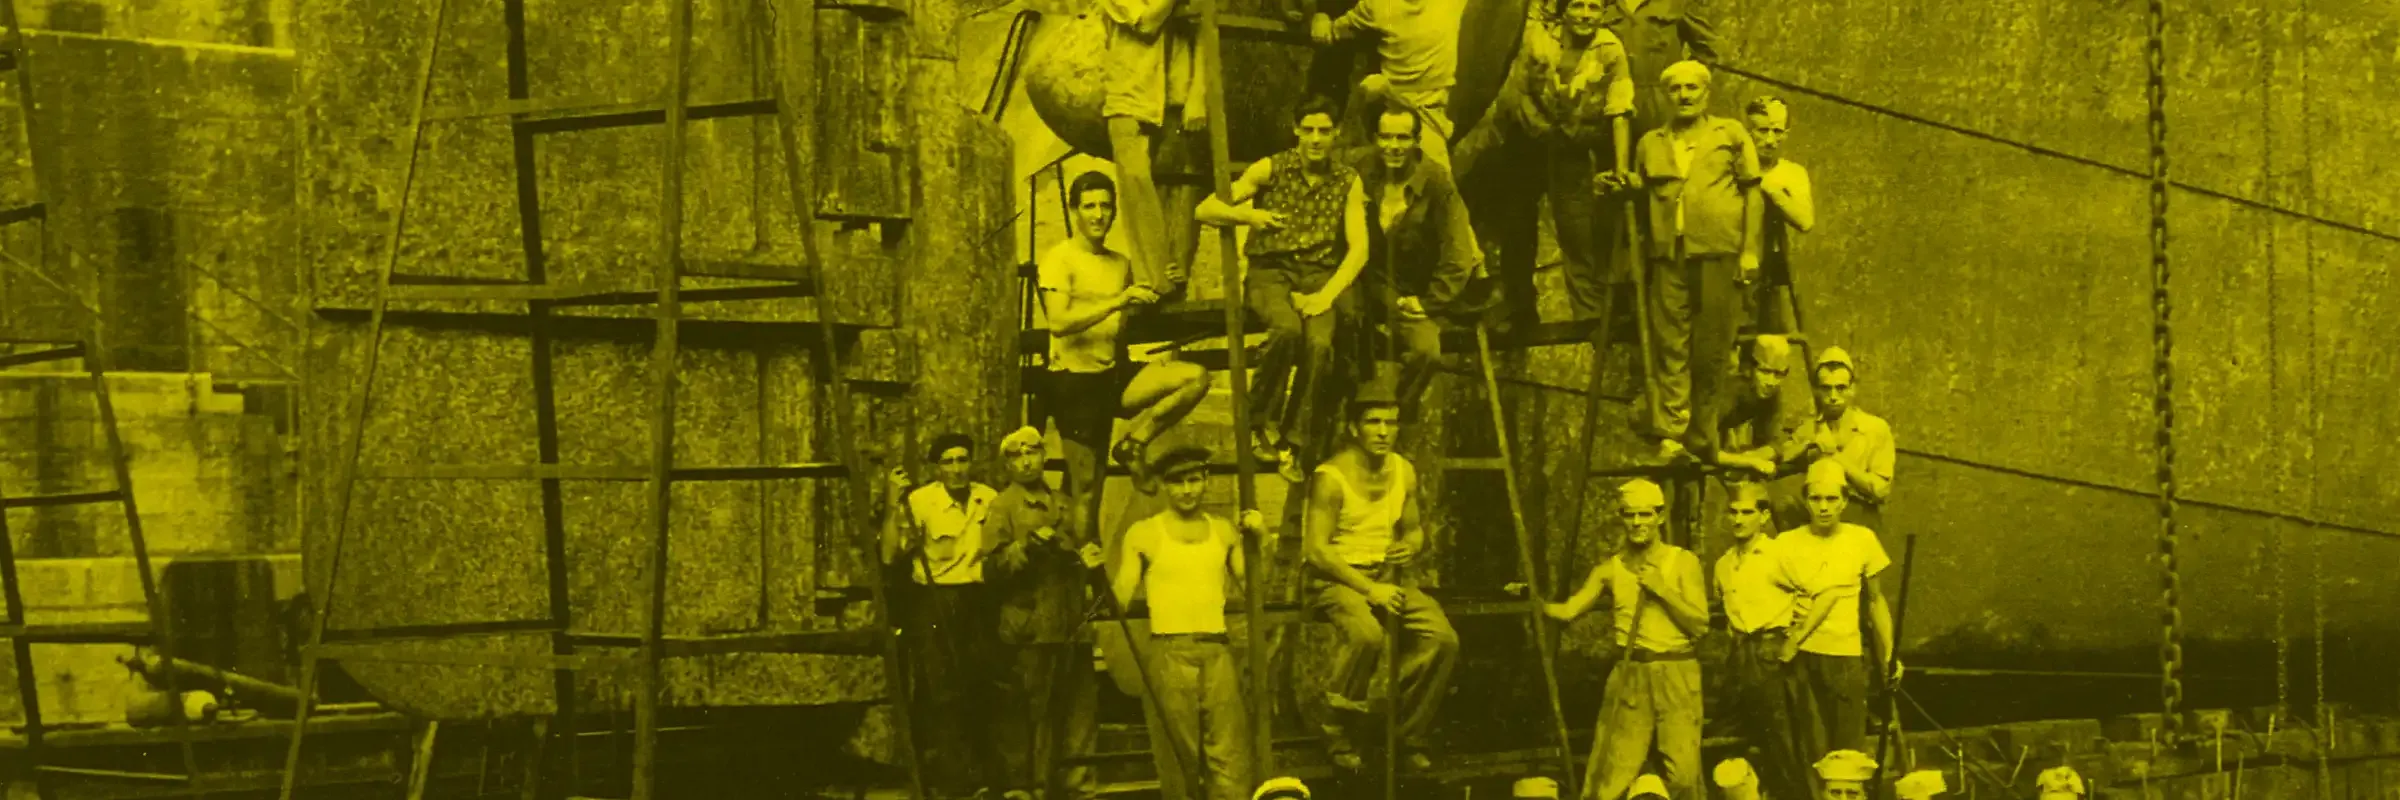 Gli ultimi arsenalotti - Immagine tematica: un gruppo di uomini, uno sopra l'altro a formare una piramide, al fianco di una chiglia navale. La foto è con dominante di colore giallo.